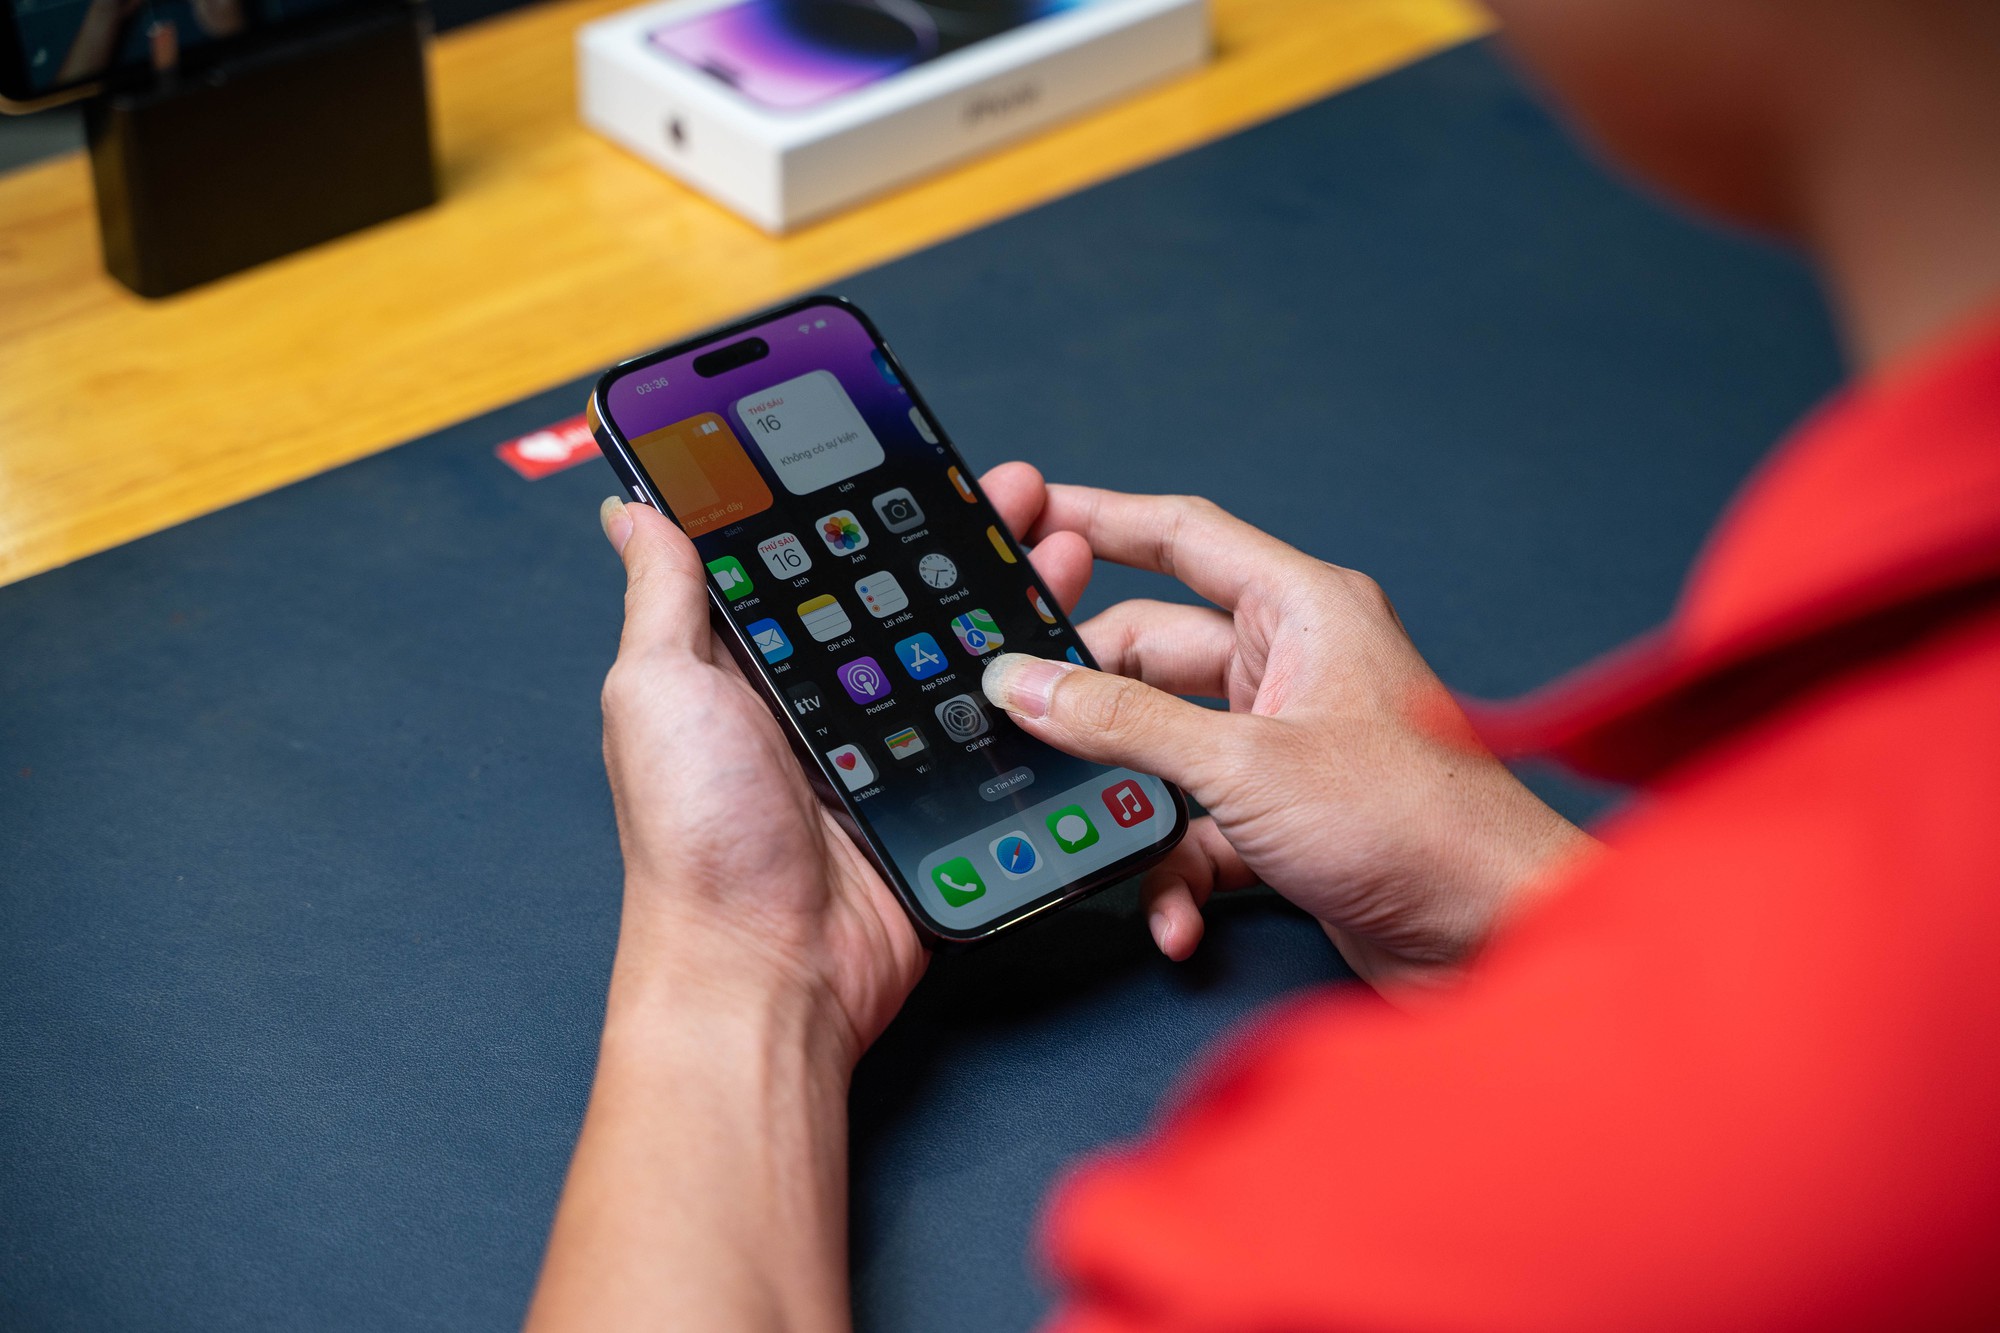 Đôi khi, chúng ta cần phải tháo tung chiếc điện thoại của mình để sửa chữa hoặc nâng cấp. Đừng lo lắng, hình ảnh Tháo tung iPhone 14 Pro Max sẽ giúp bạn hiểu rõ hơn về cách tháo lắp, bảo trì và nâng cấp chiếc điện thoại cao cấp của mình.